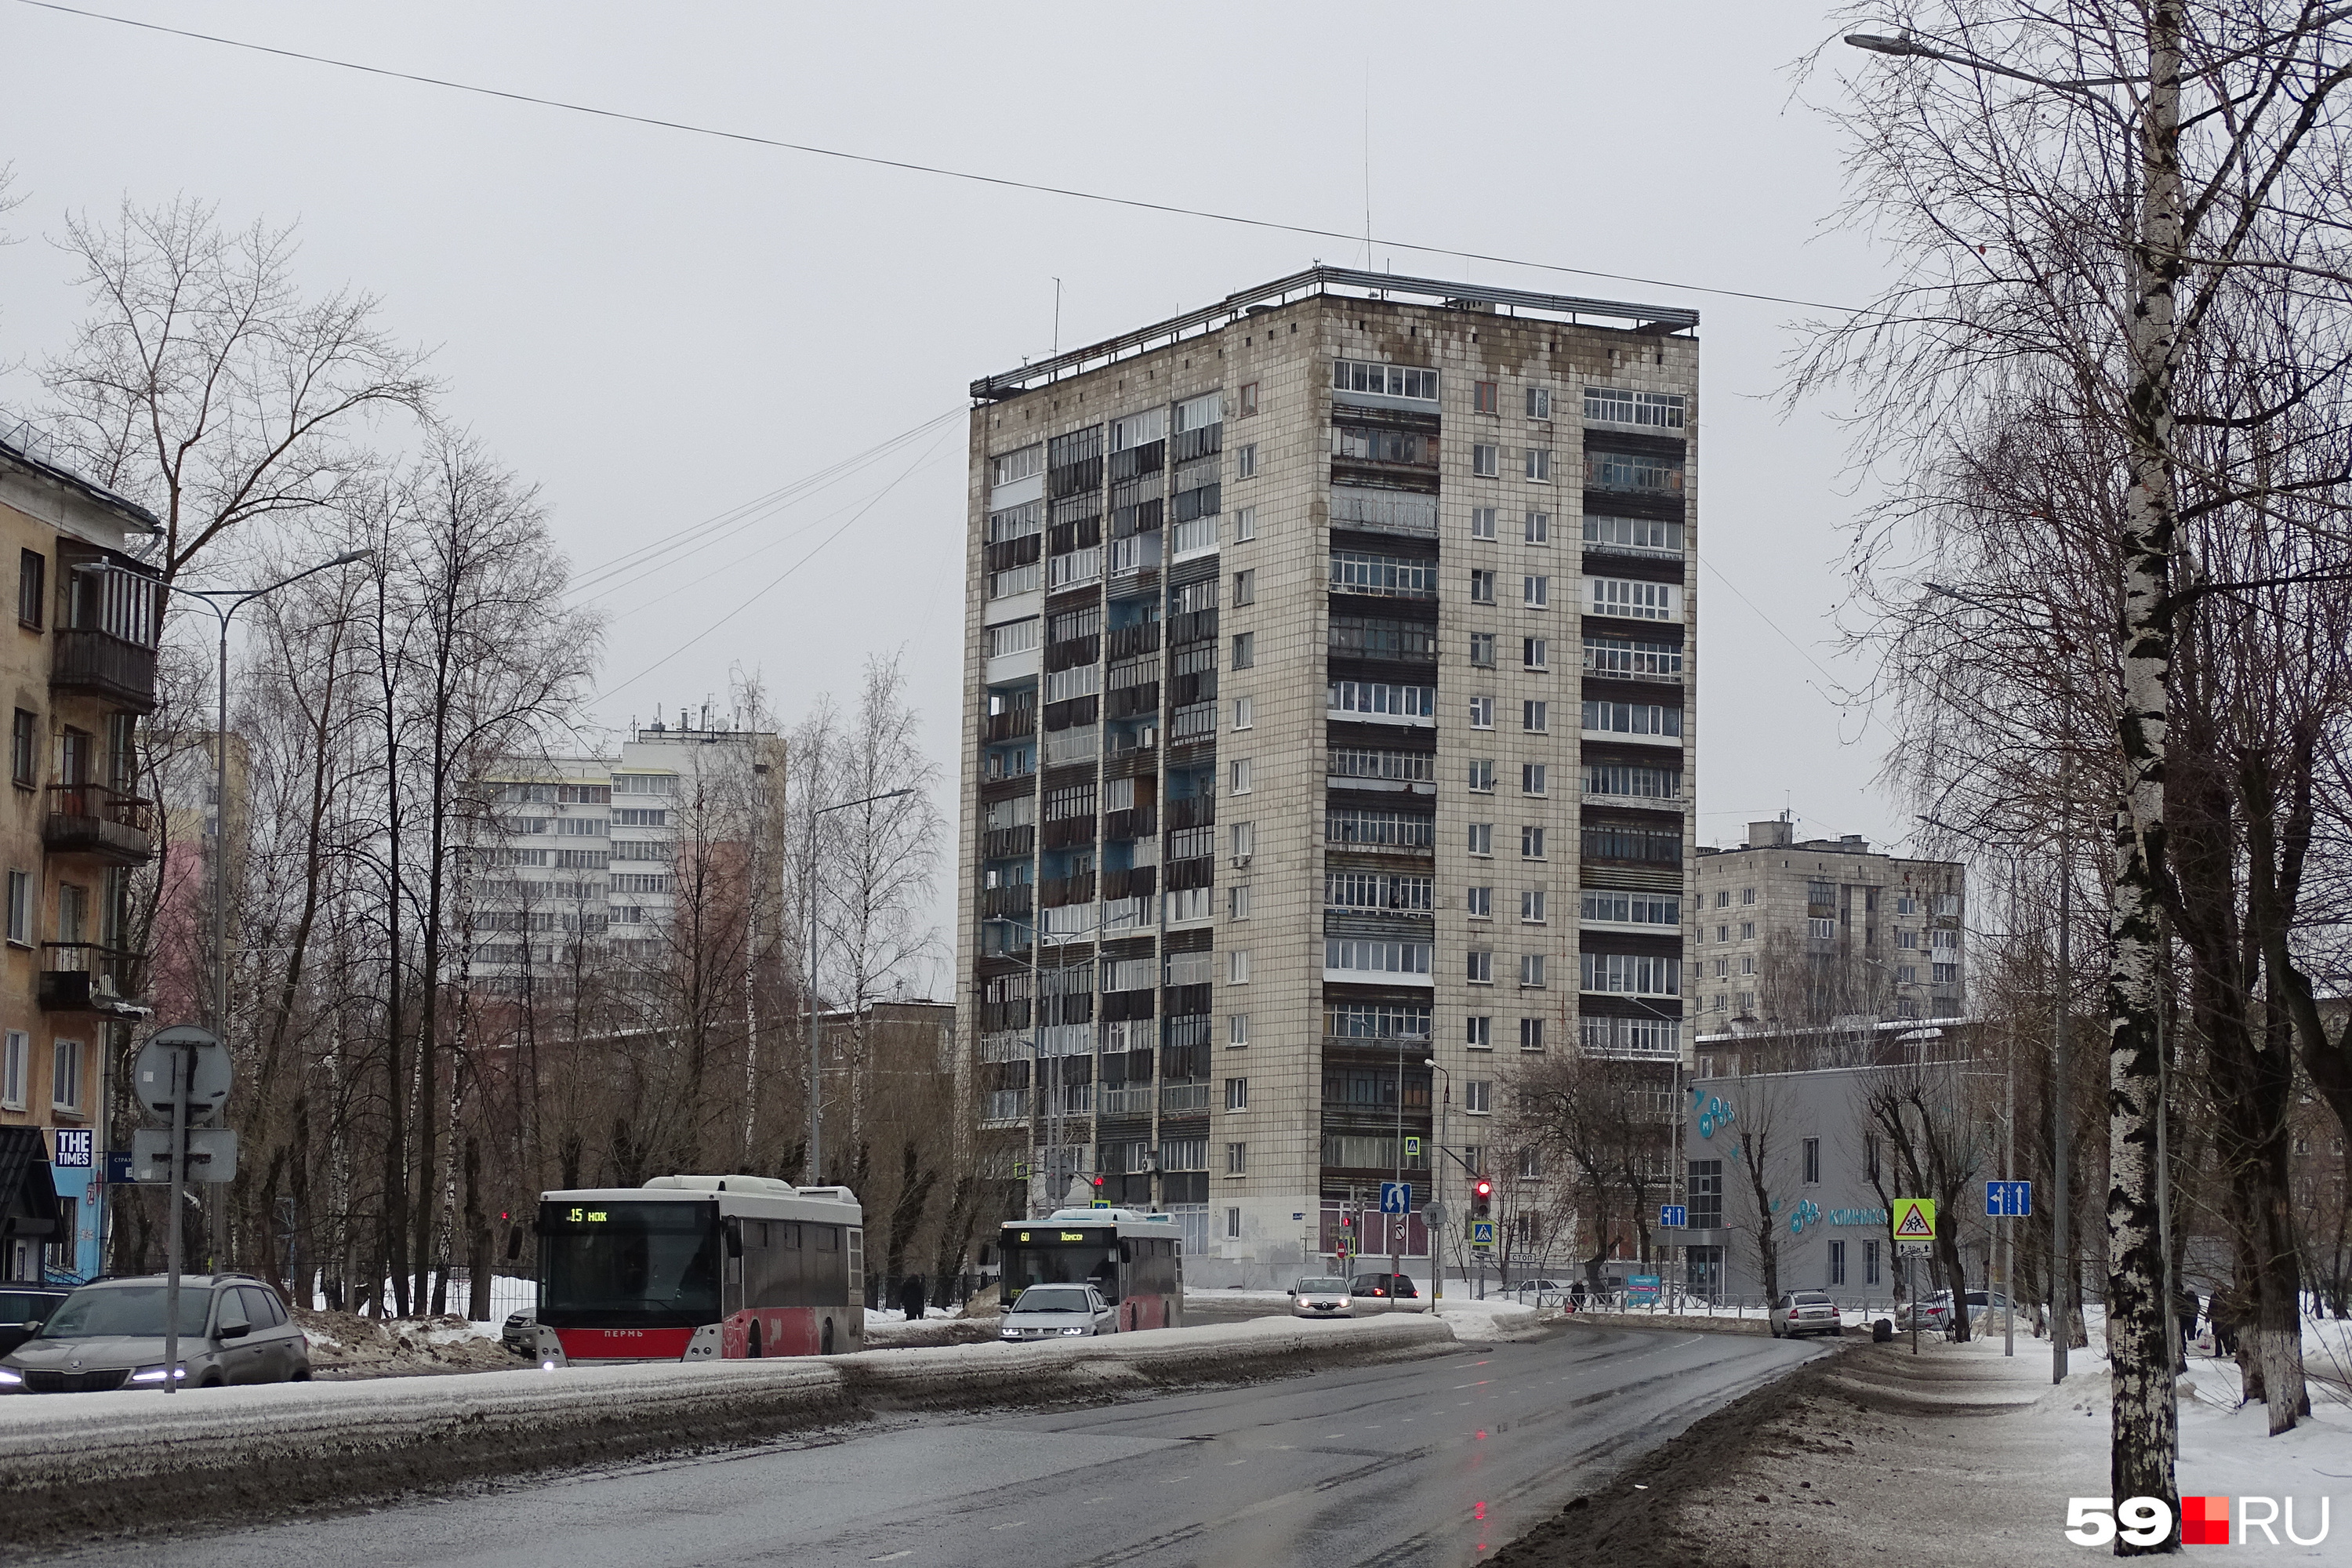 Для невысотной застройки Закамска этот дом на углу улиц Маршала Рыбалко и Шишкина можно смело назвать архитектурной доминантой